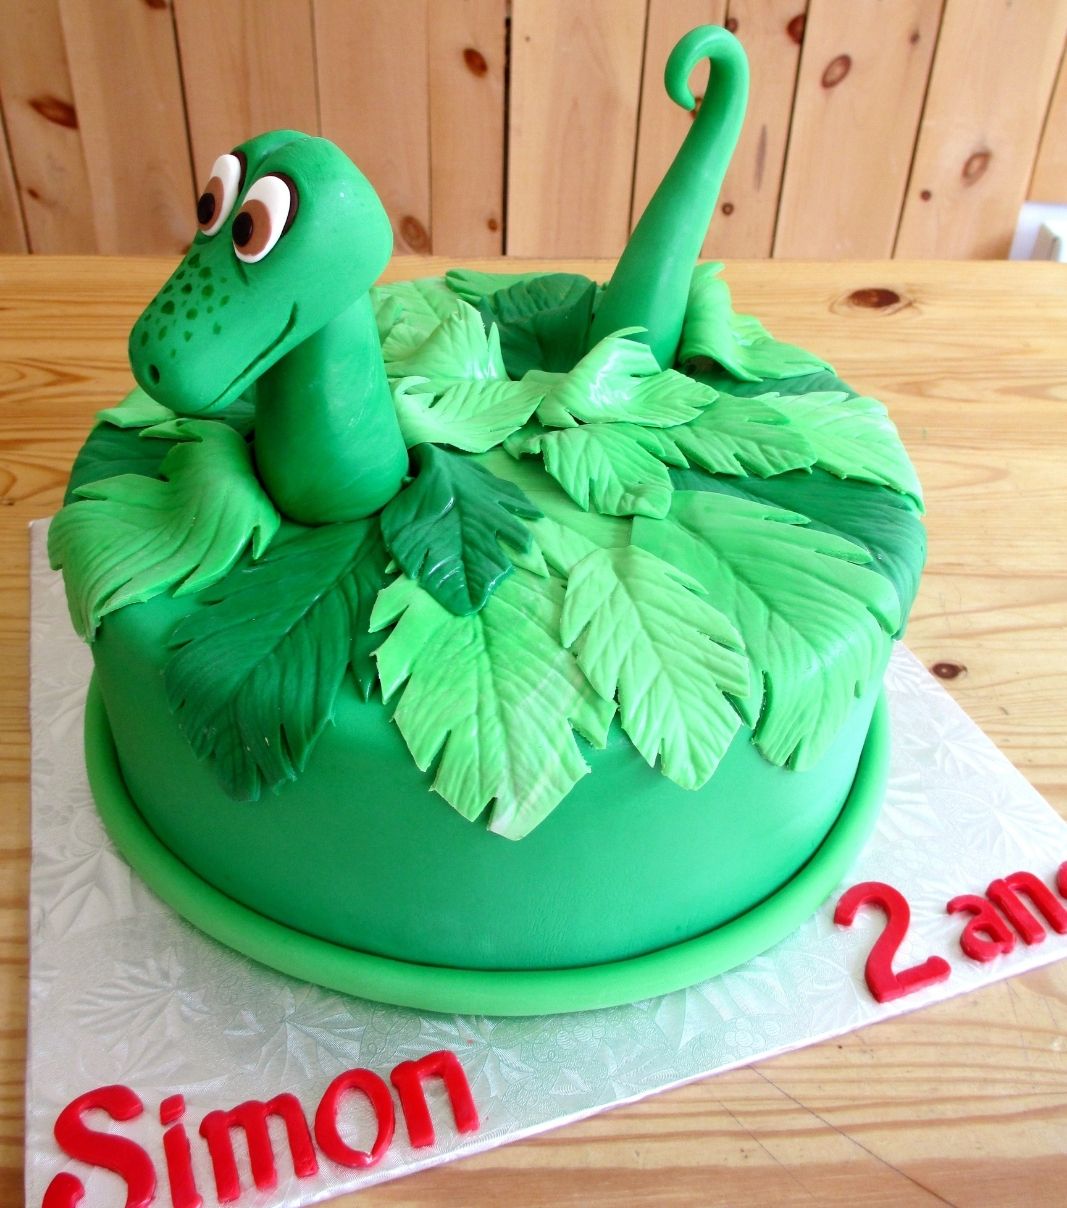 Gâteau d'anniversaire sur mesure des 2 ans de Simon: gâteau à thématique de dinosaure avec un feuillage de fougères, une tête et une queue de dinosaure en fondant.